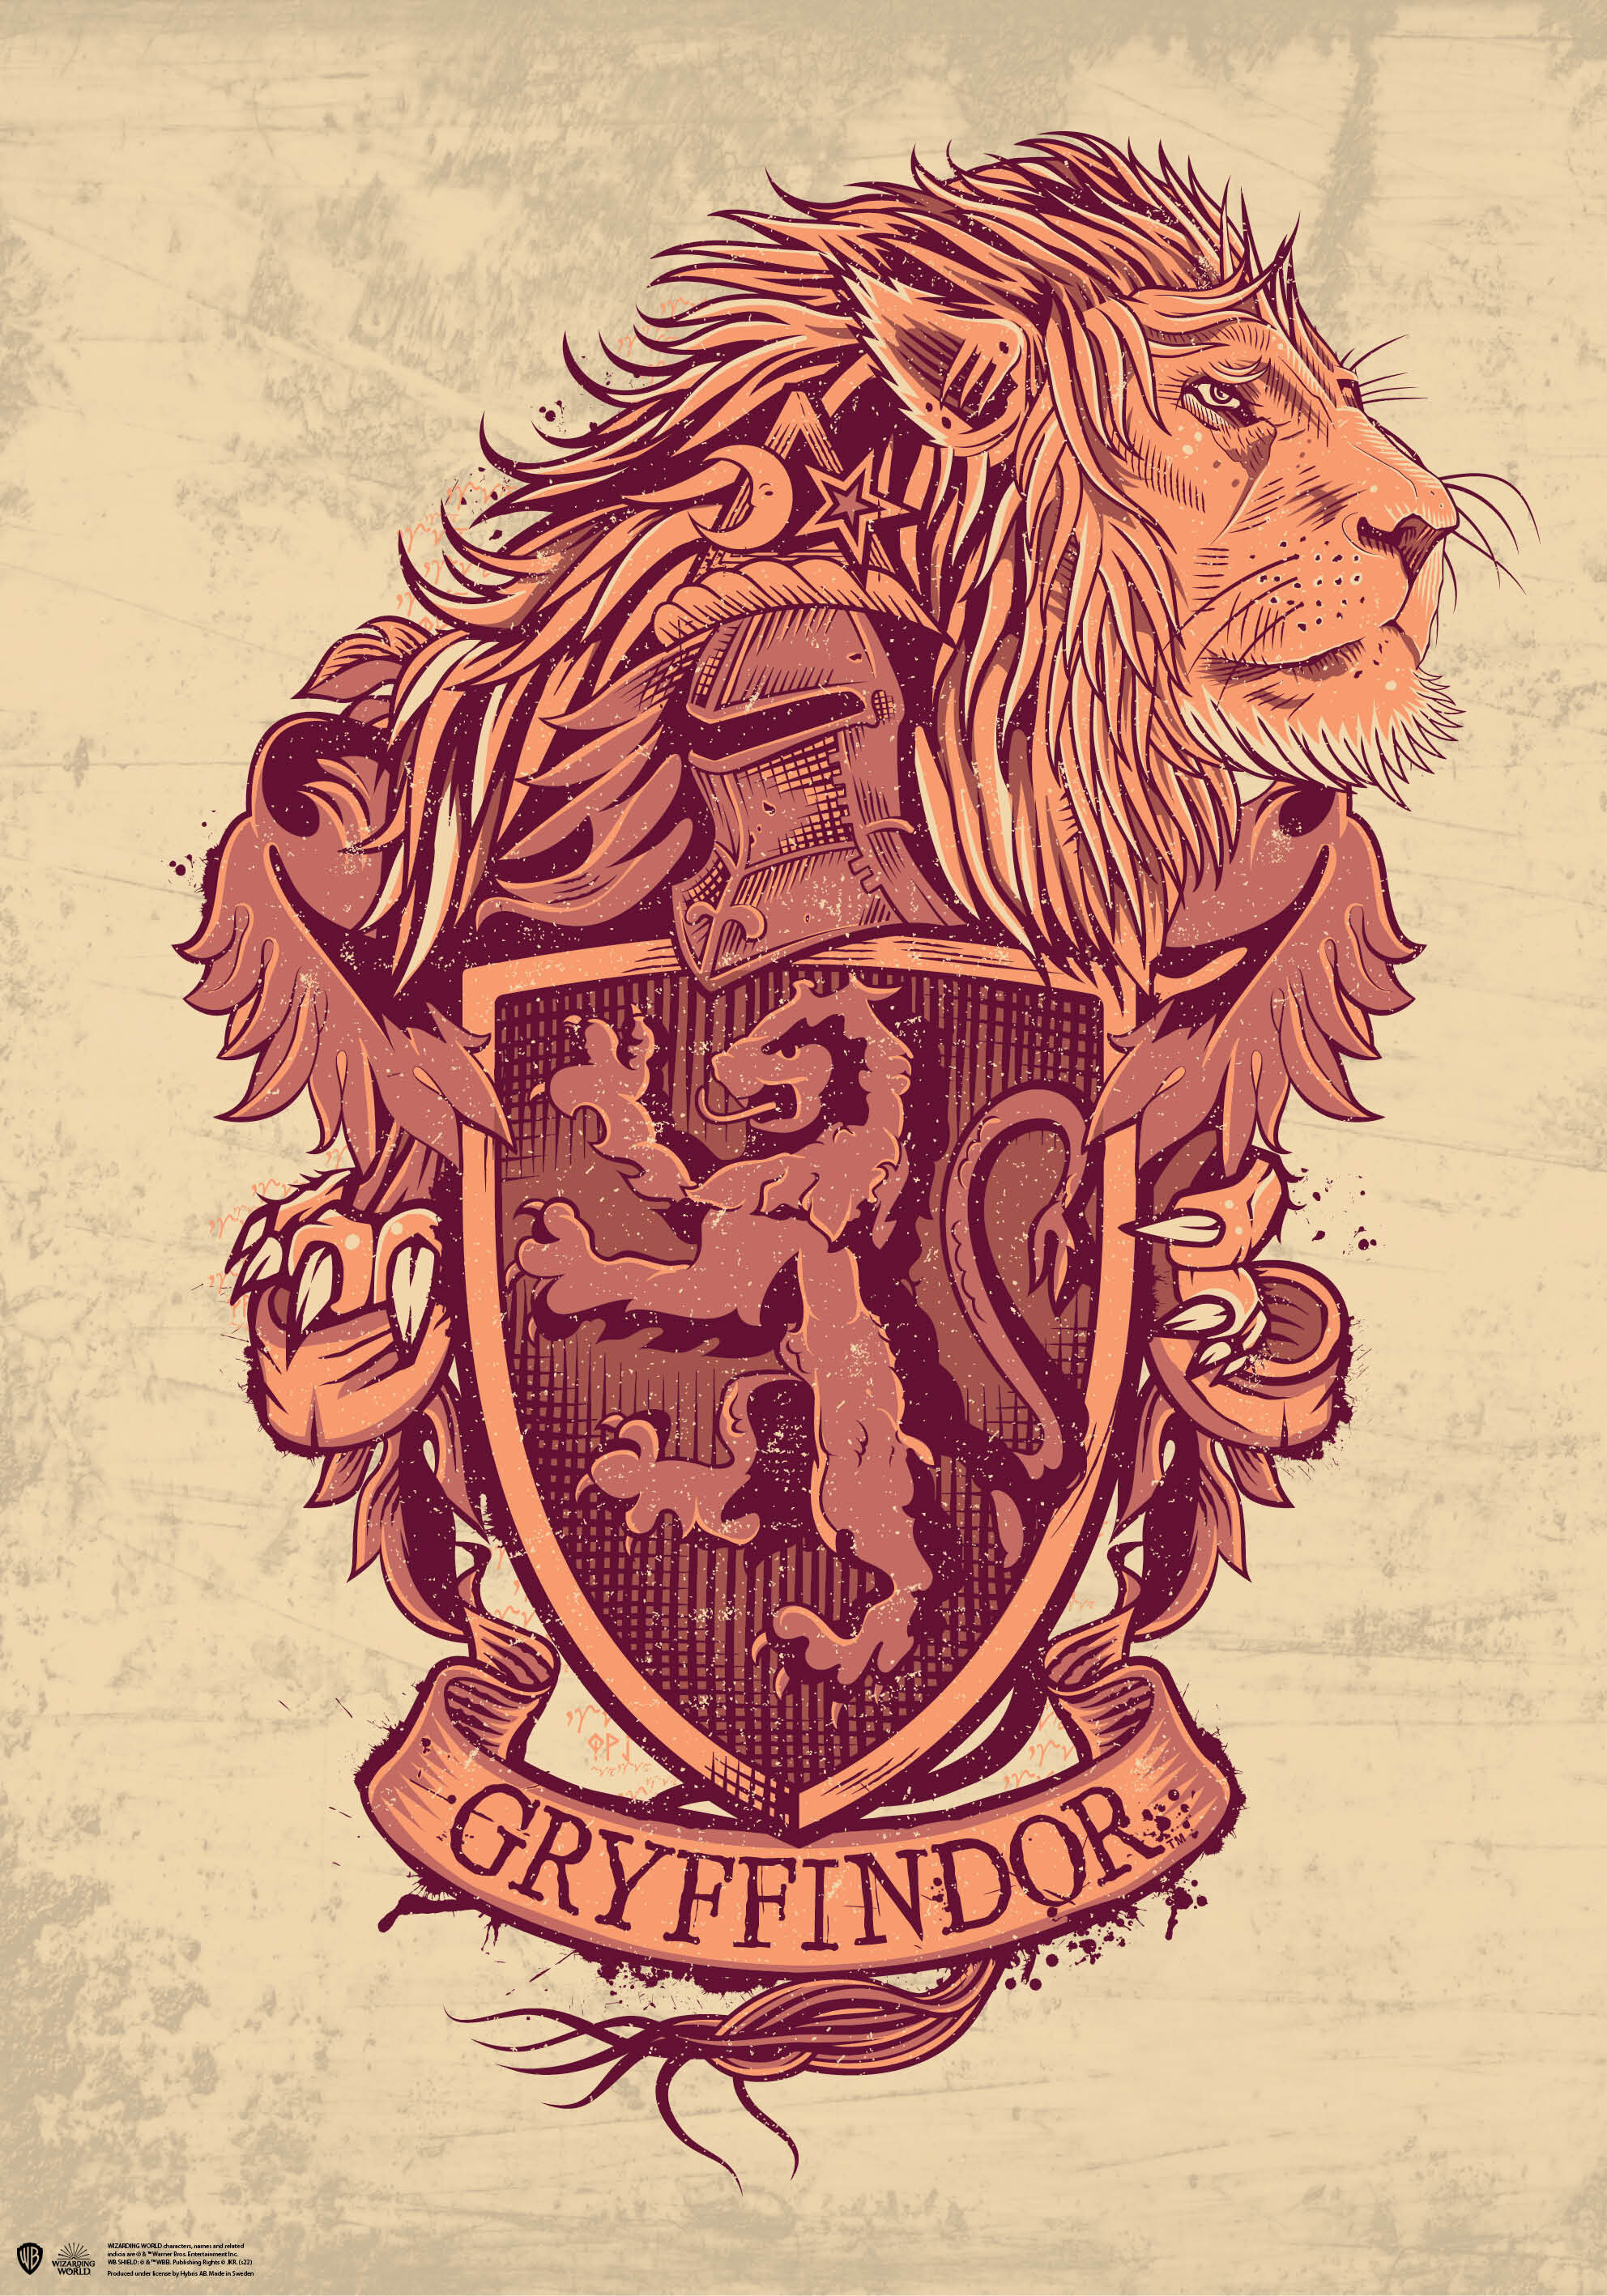 Harry Potter - Gryffindor Poster 1